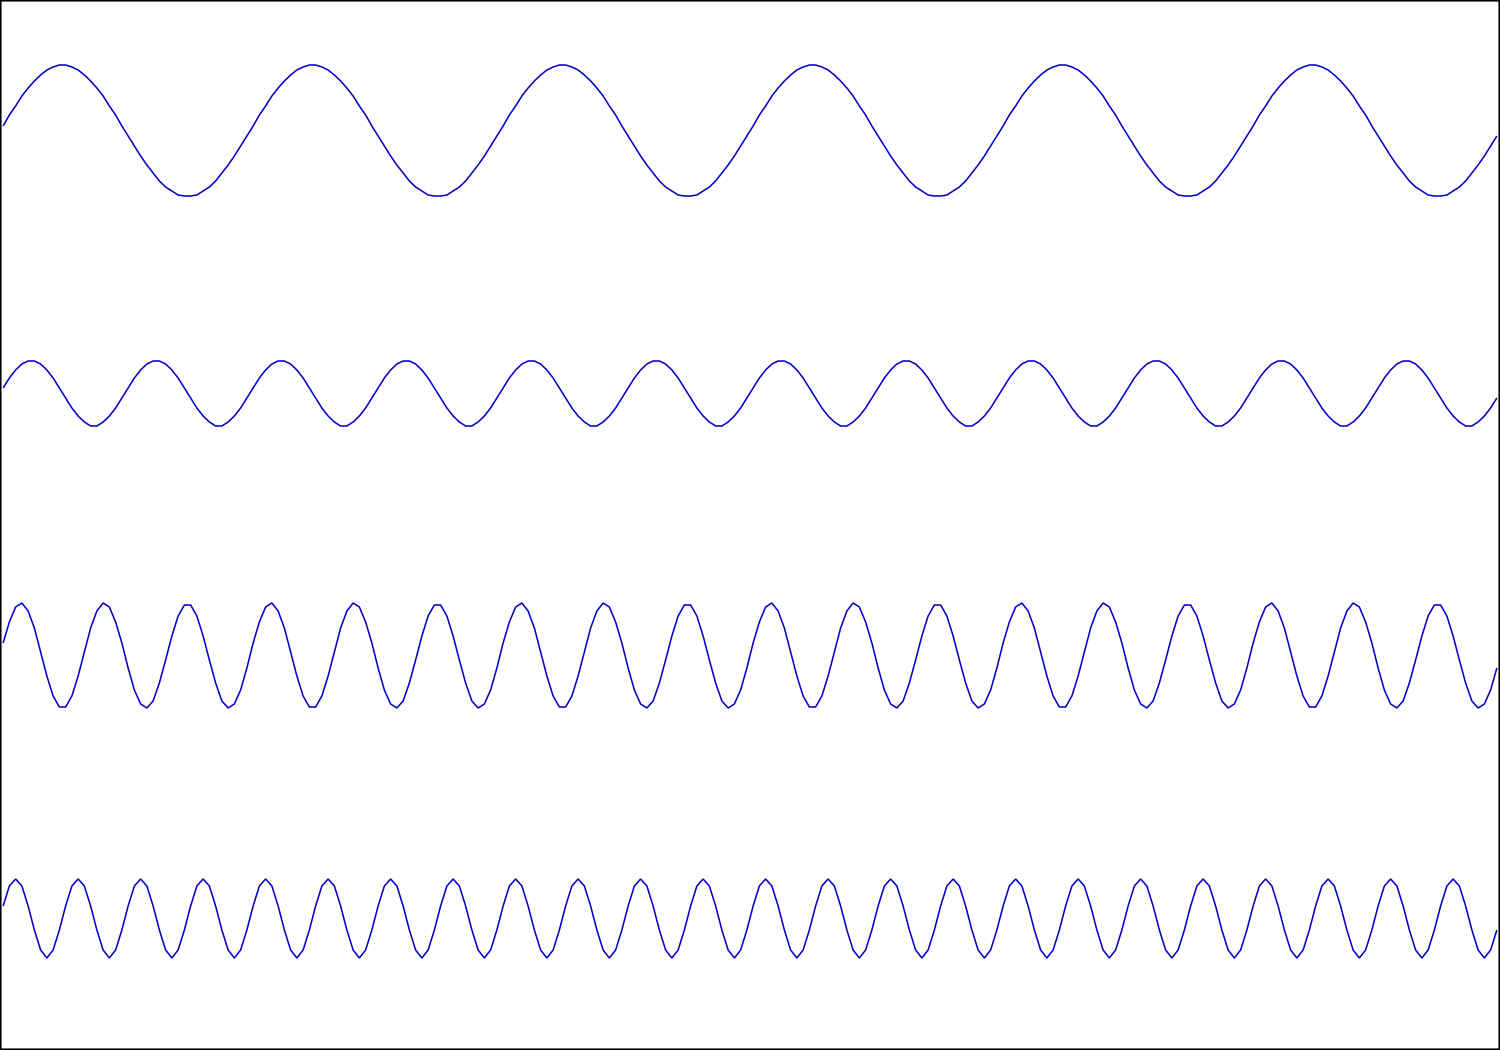 Cuatro ondas sinusoidales correspondientes en Hz y en amplitudes a los valores presentes en la tabla de arriba